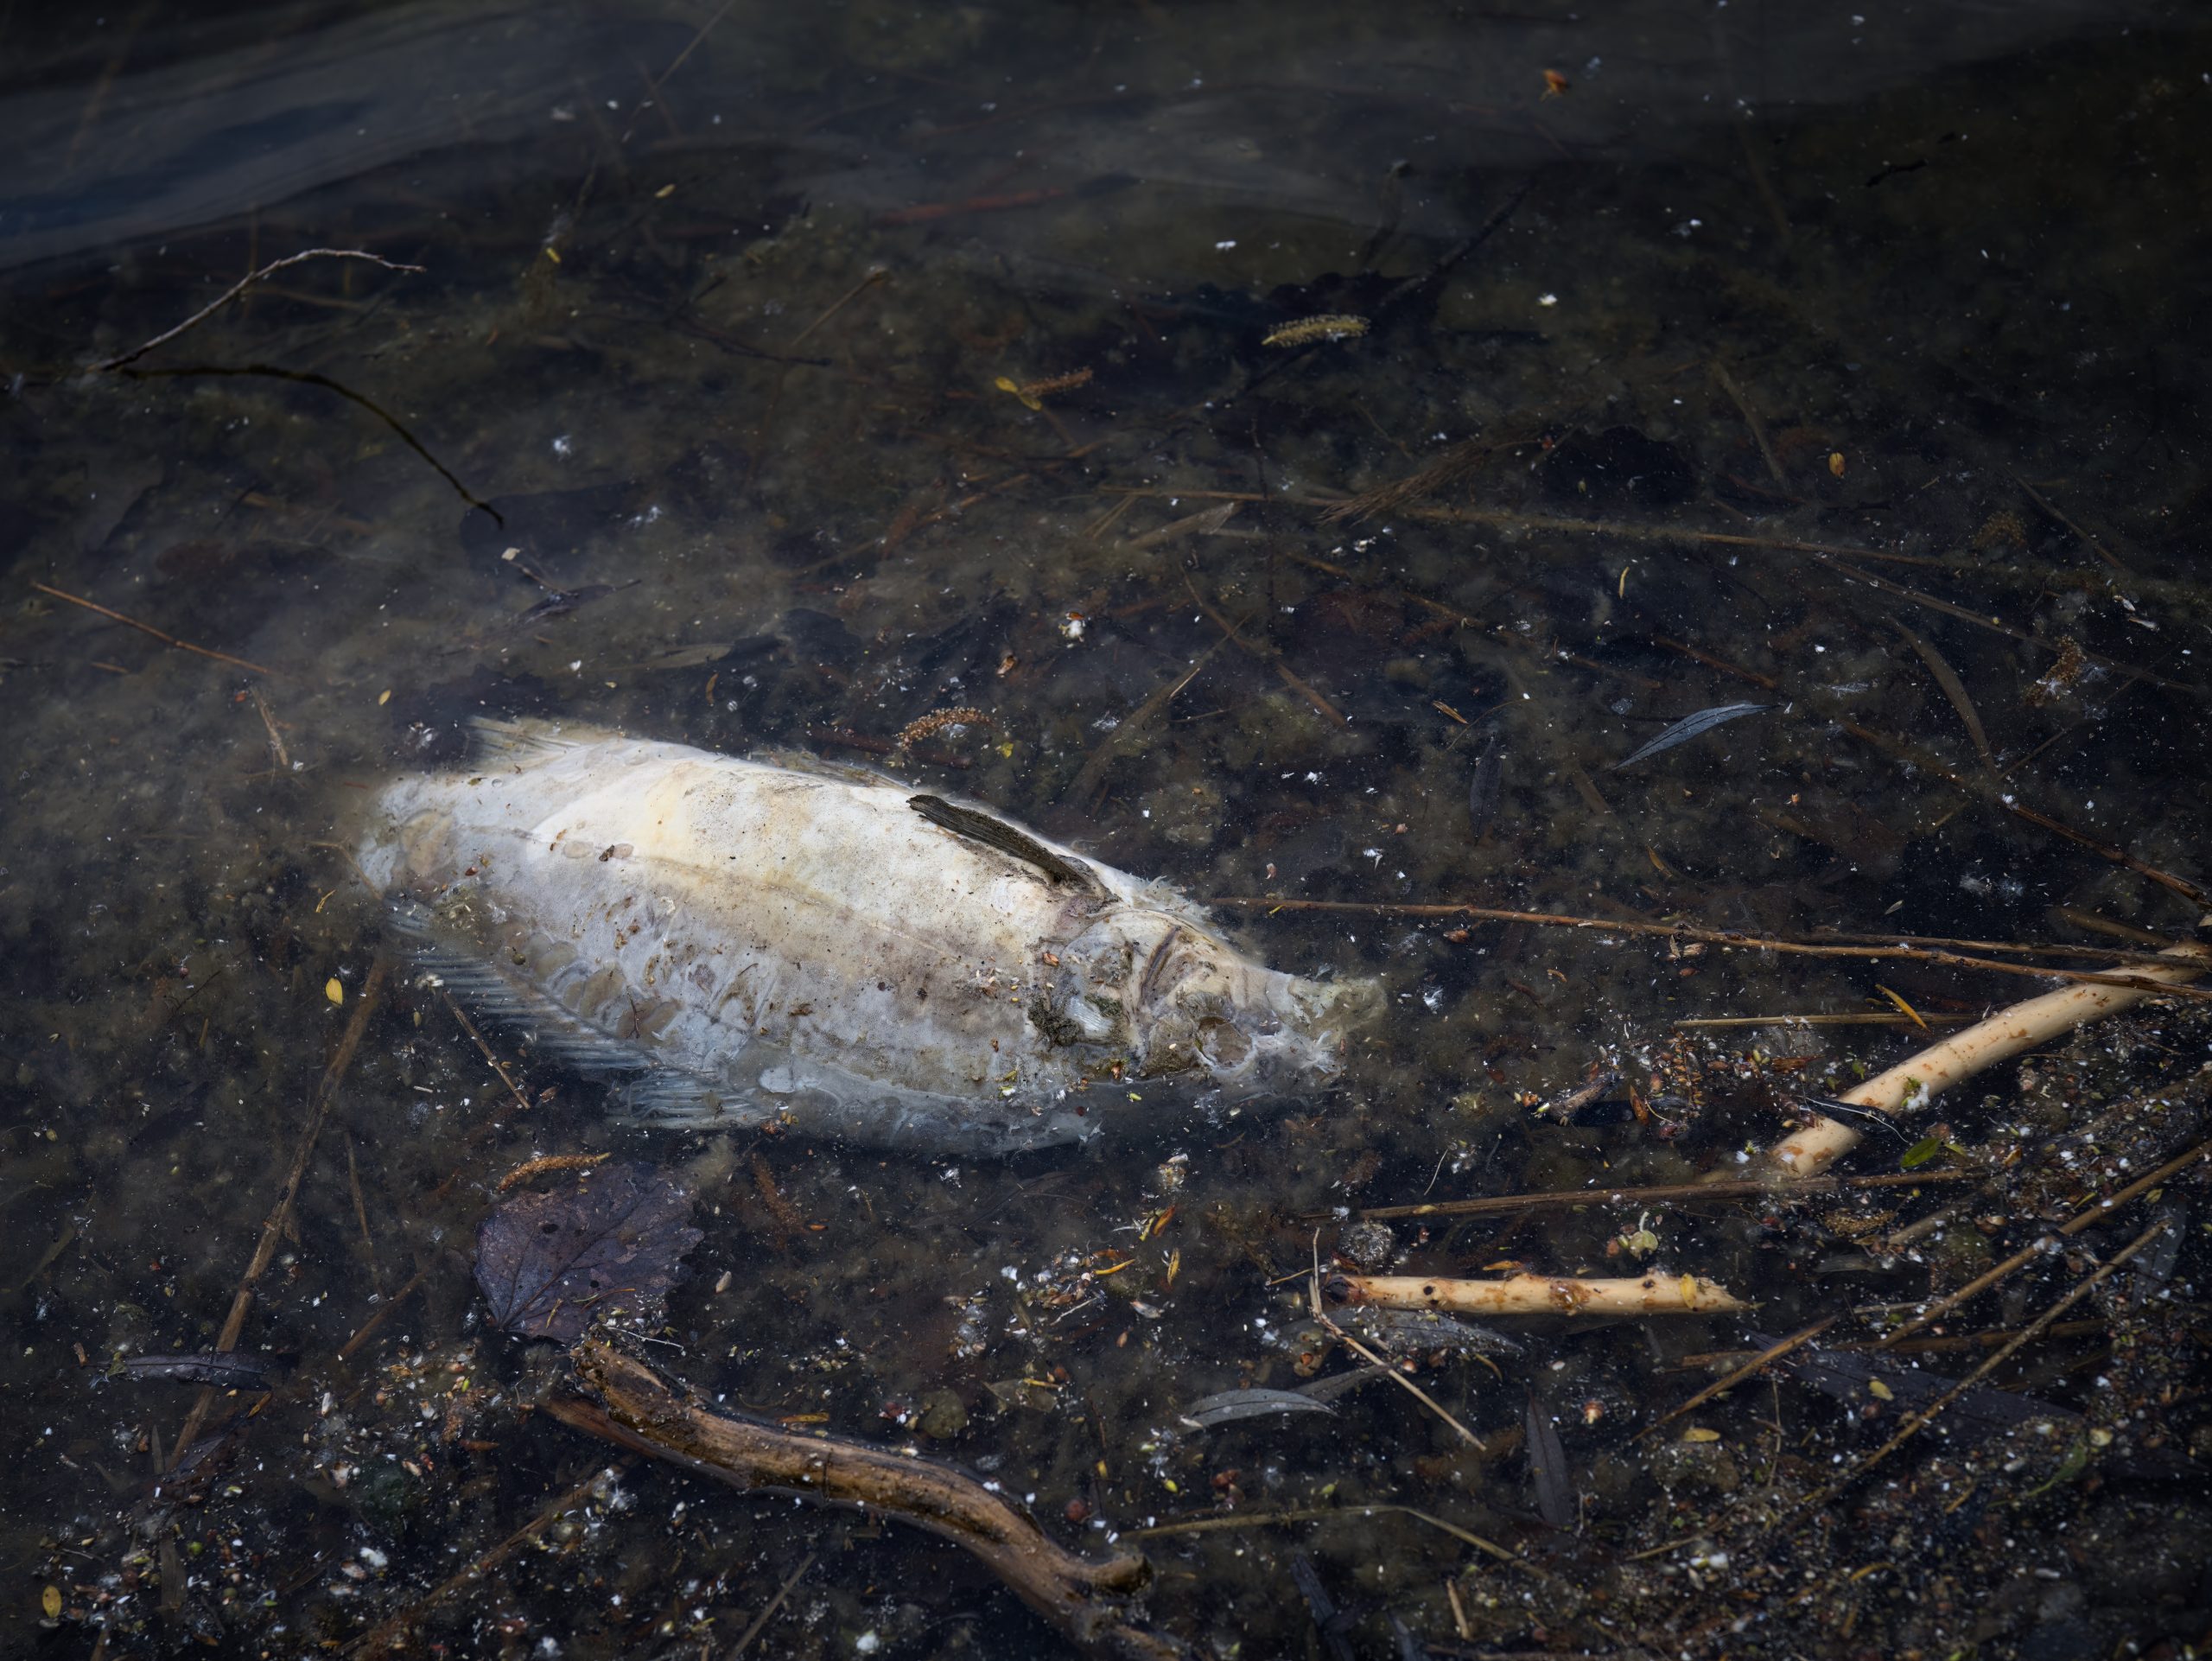 Winterkill dead fish